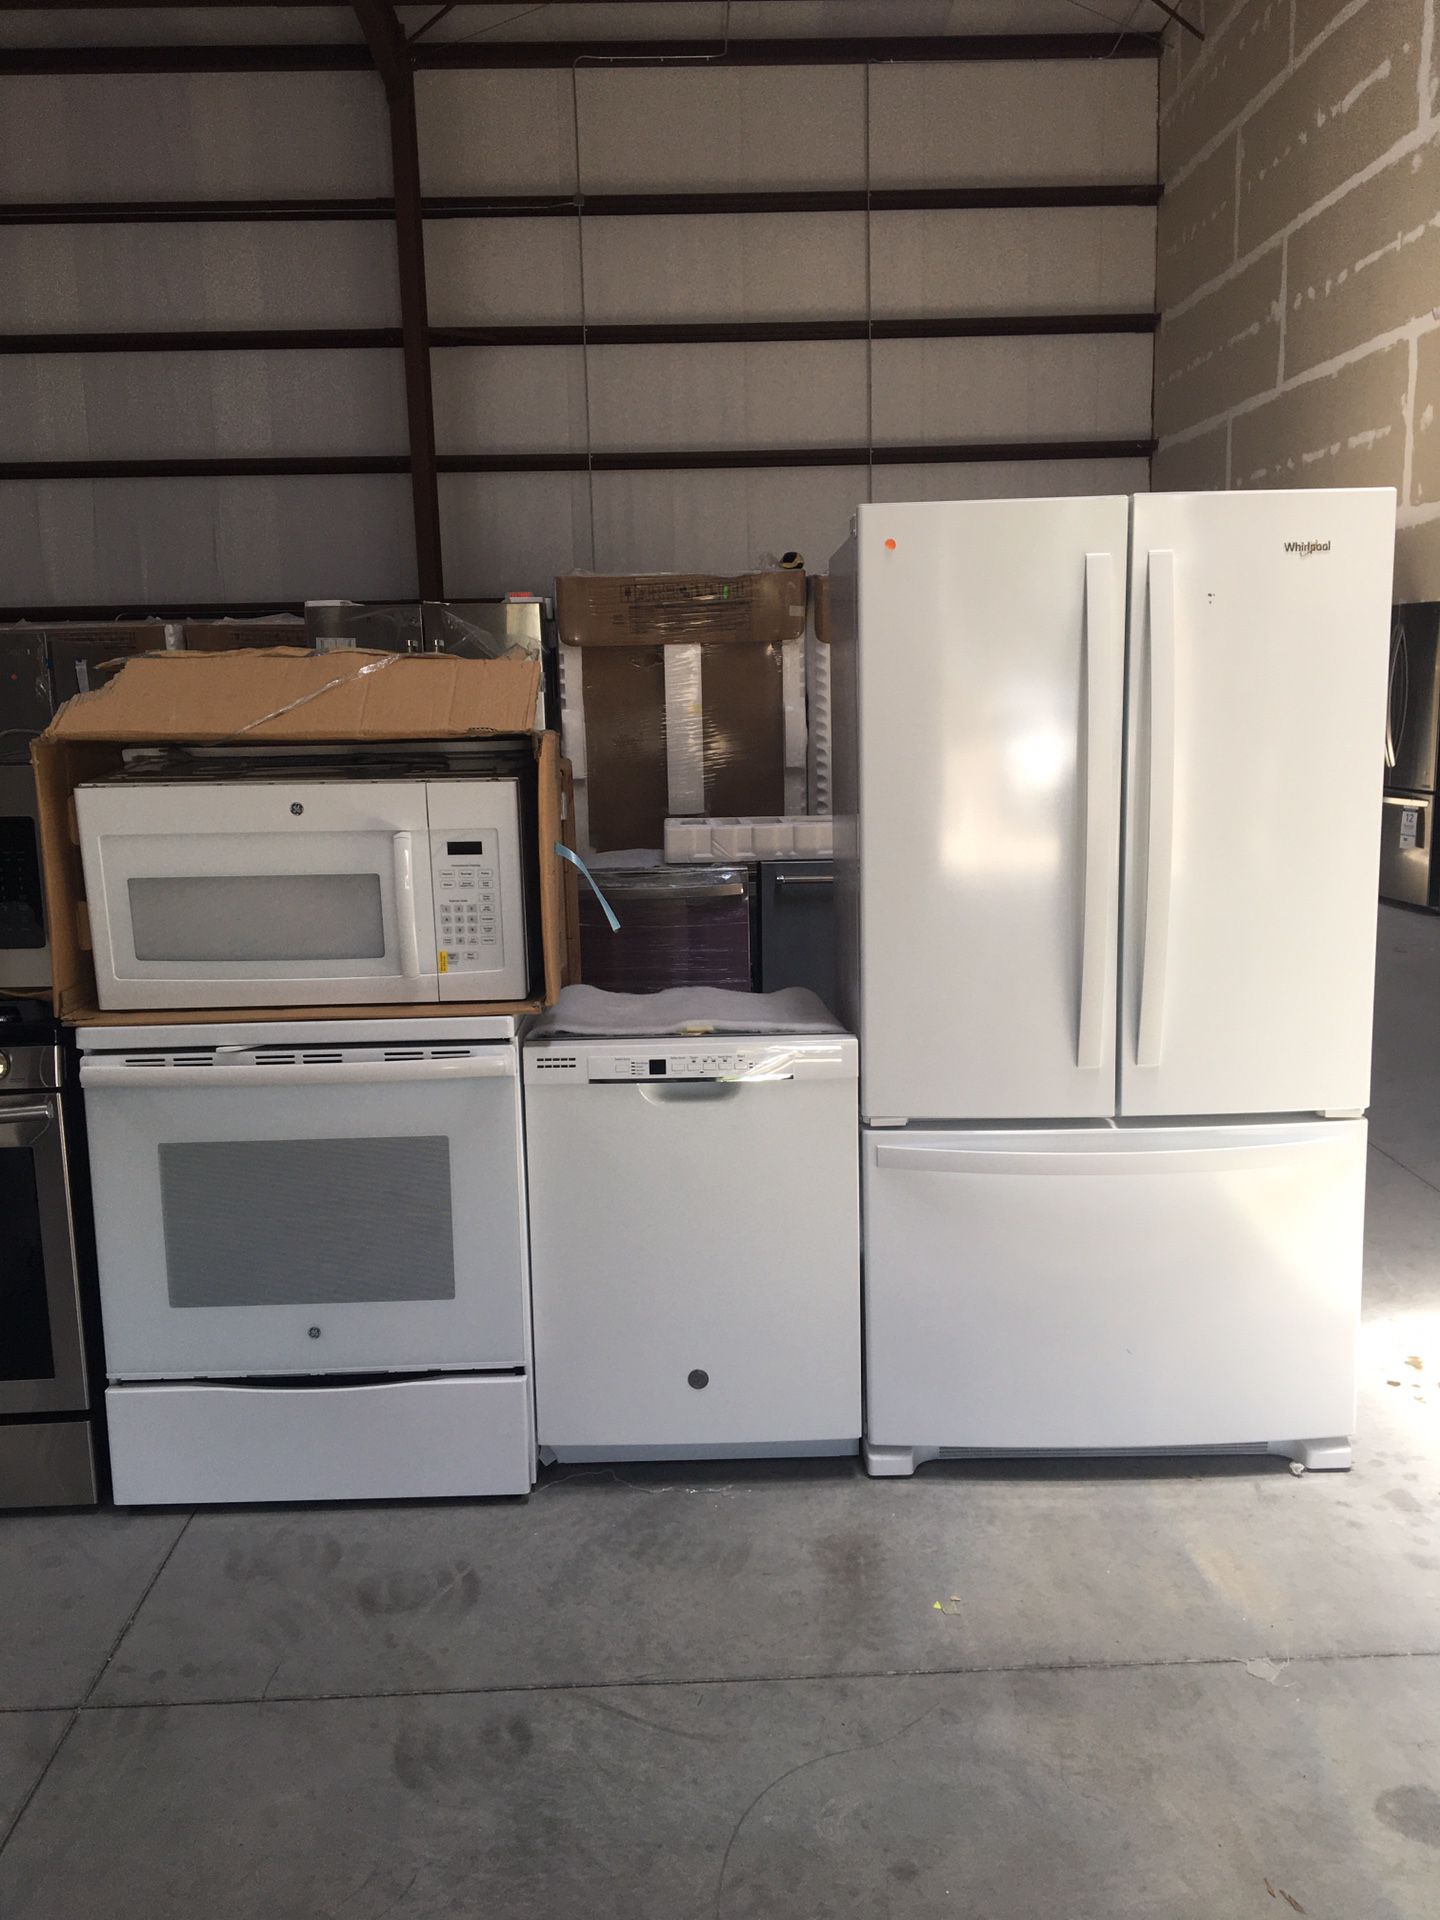 4-piece white kitchen appliance set